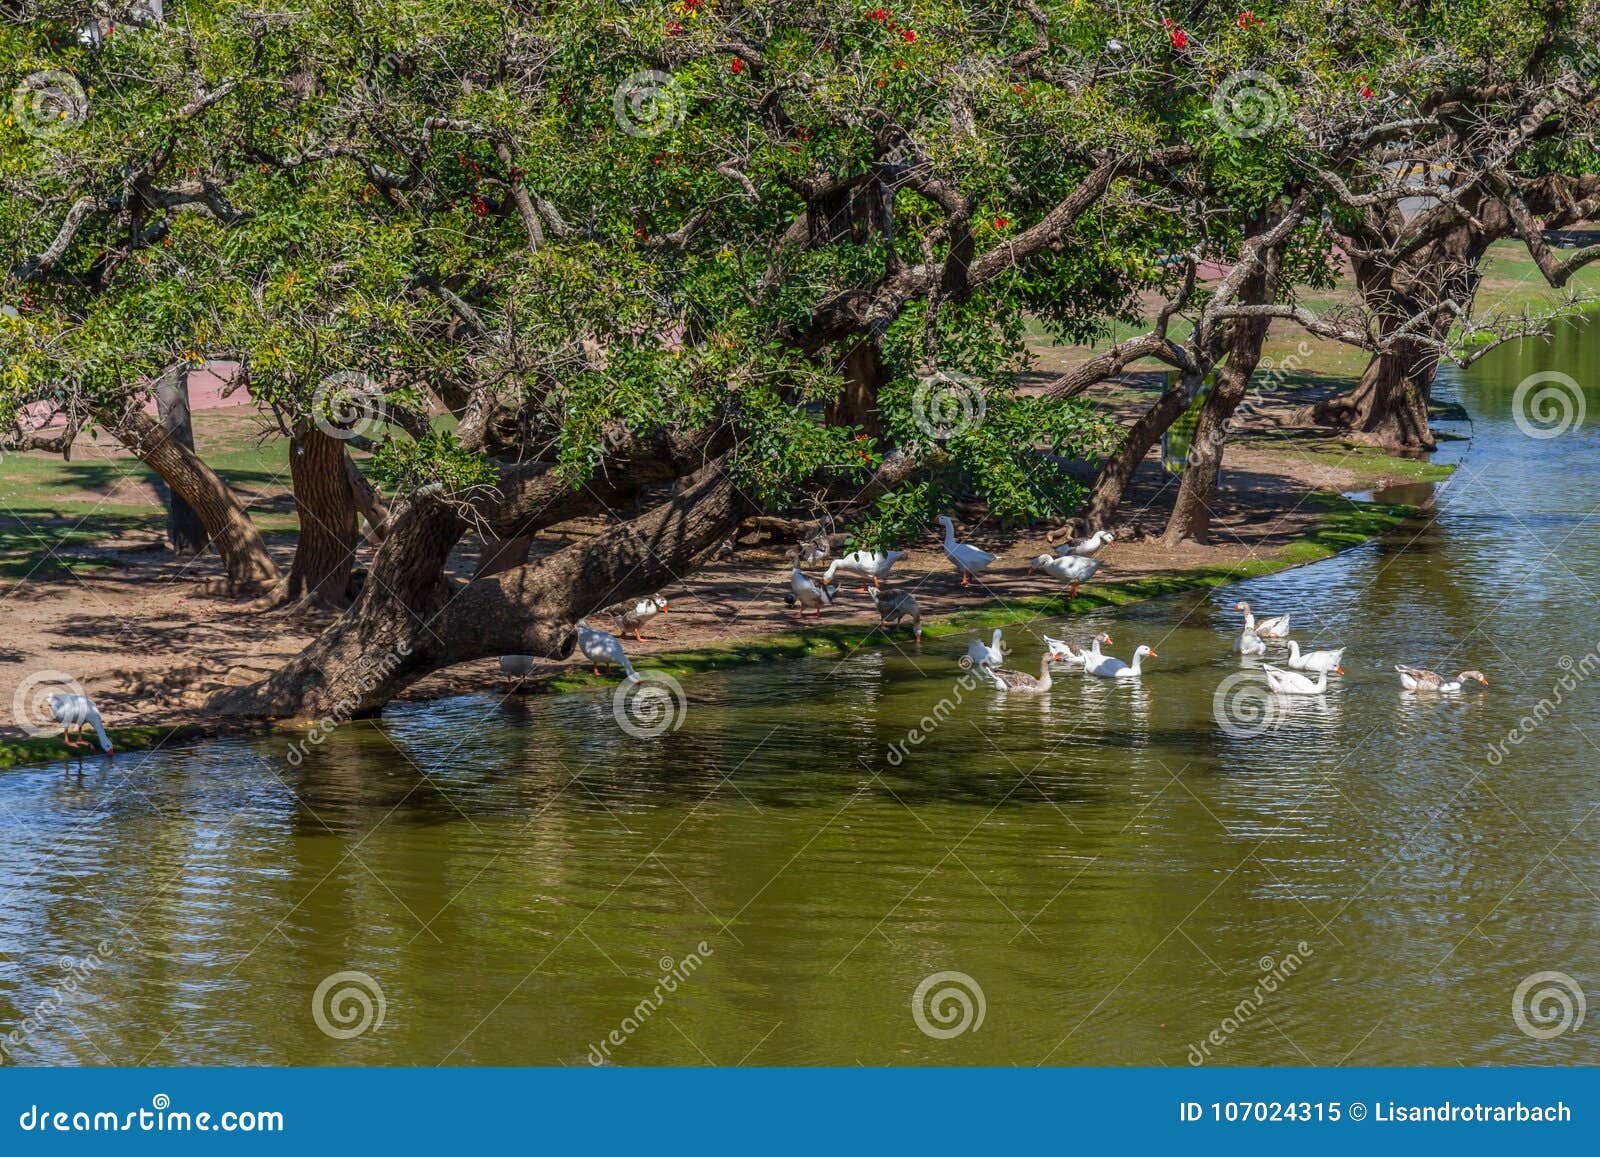 lake and ducks in bosques de palermo park